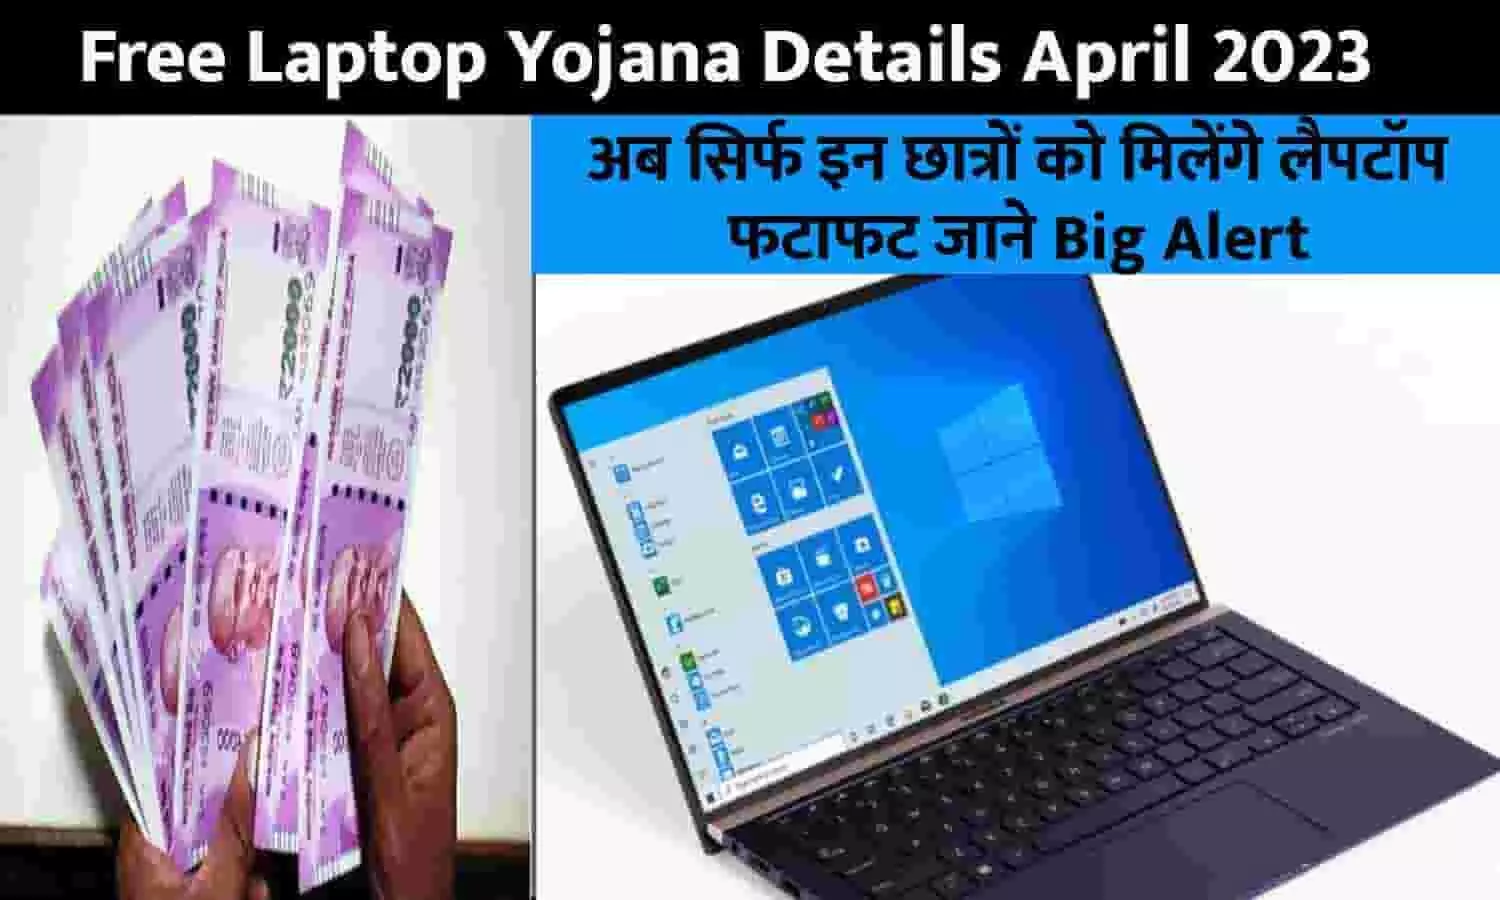 Free Laptop Yojana Details April 2023: अब सिर्फ इन छात्रों को मिलेंगे लैपटॉप, फटाफट जाने Big Alert